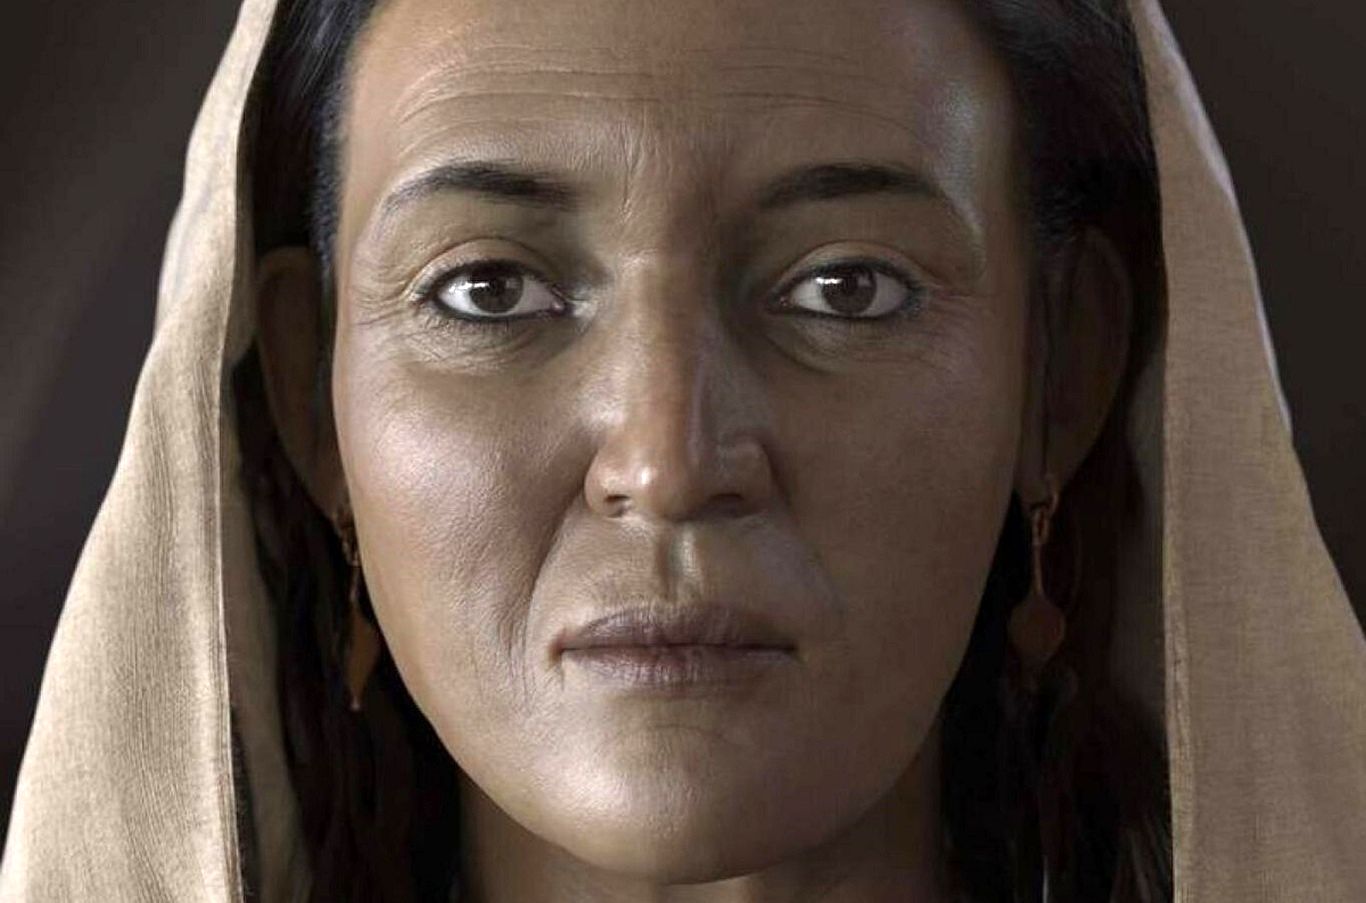 بازسازی چهره زنی متعلق به دو هزار سال پیش